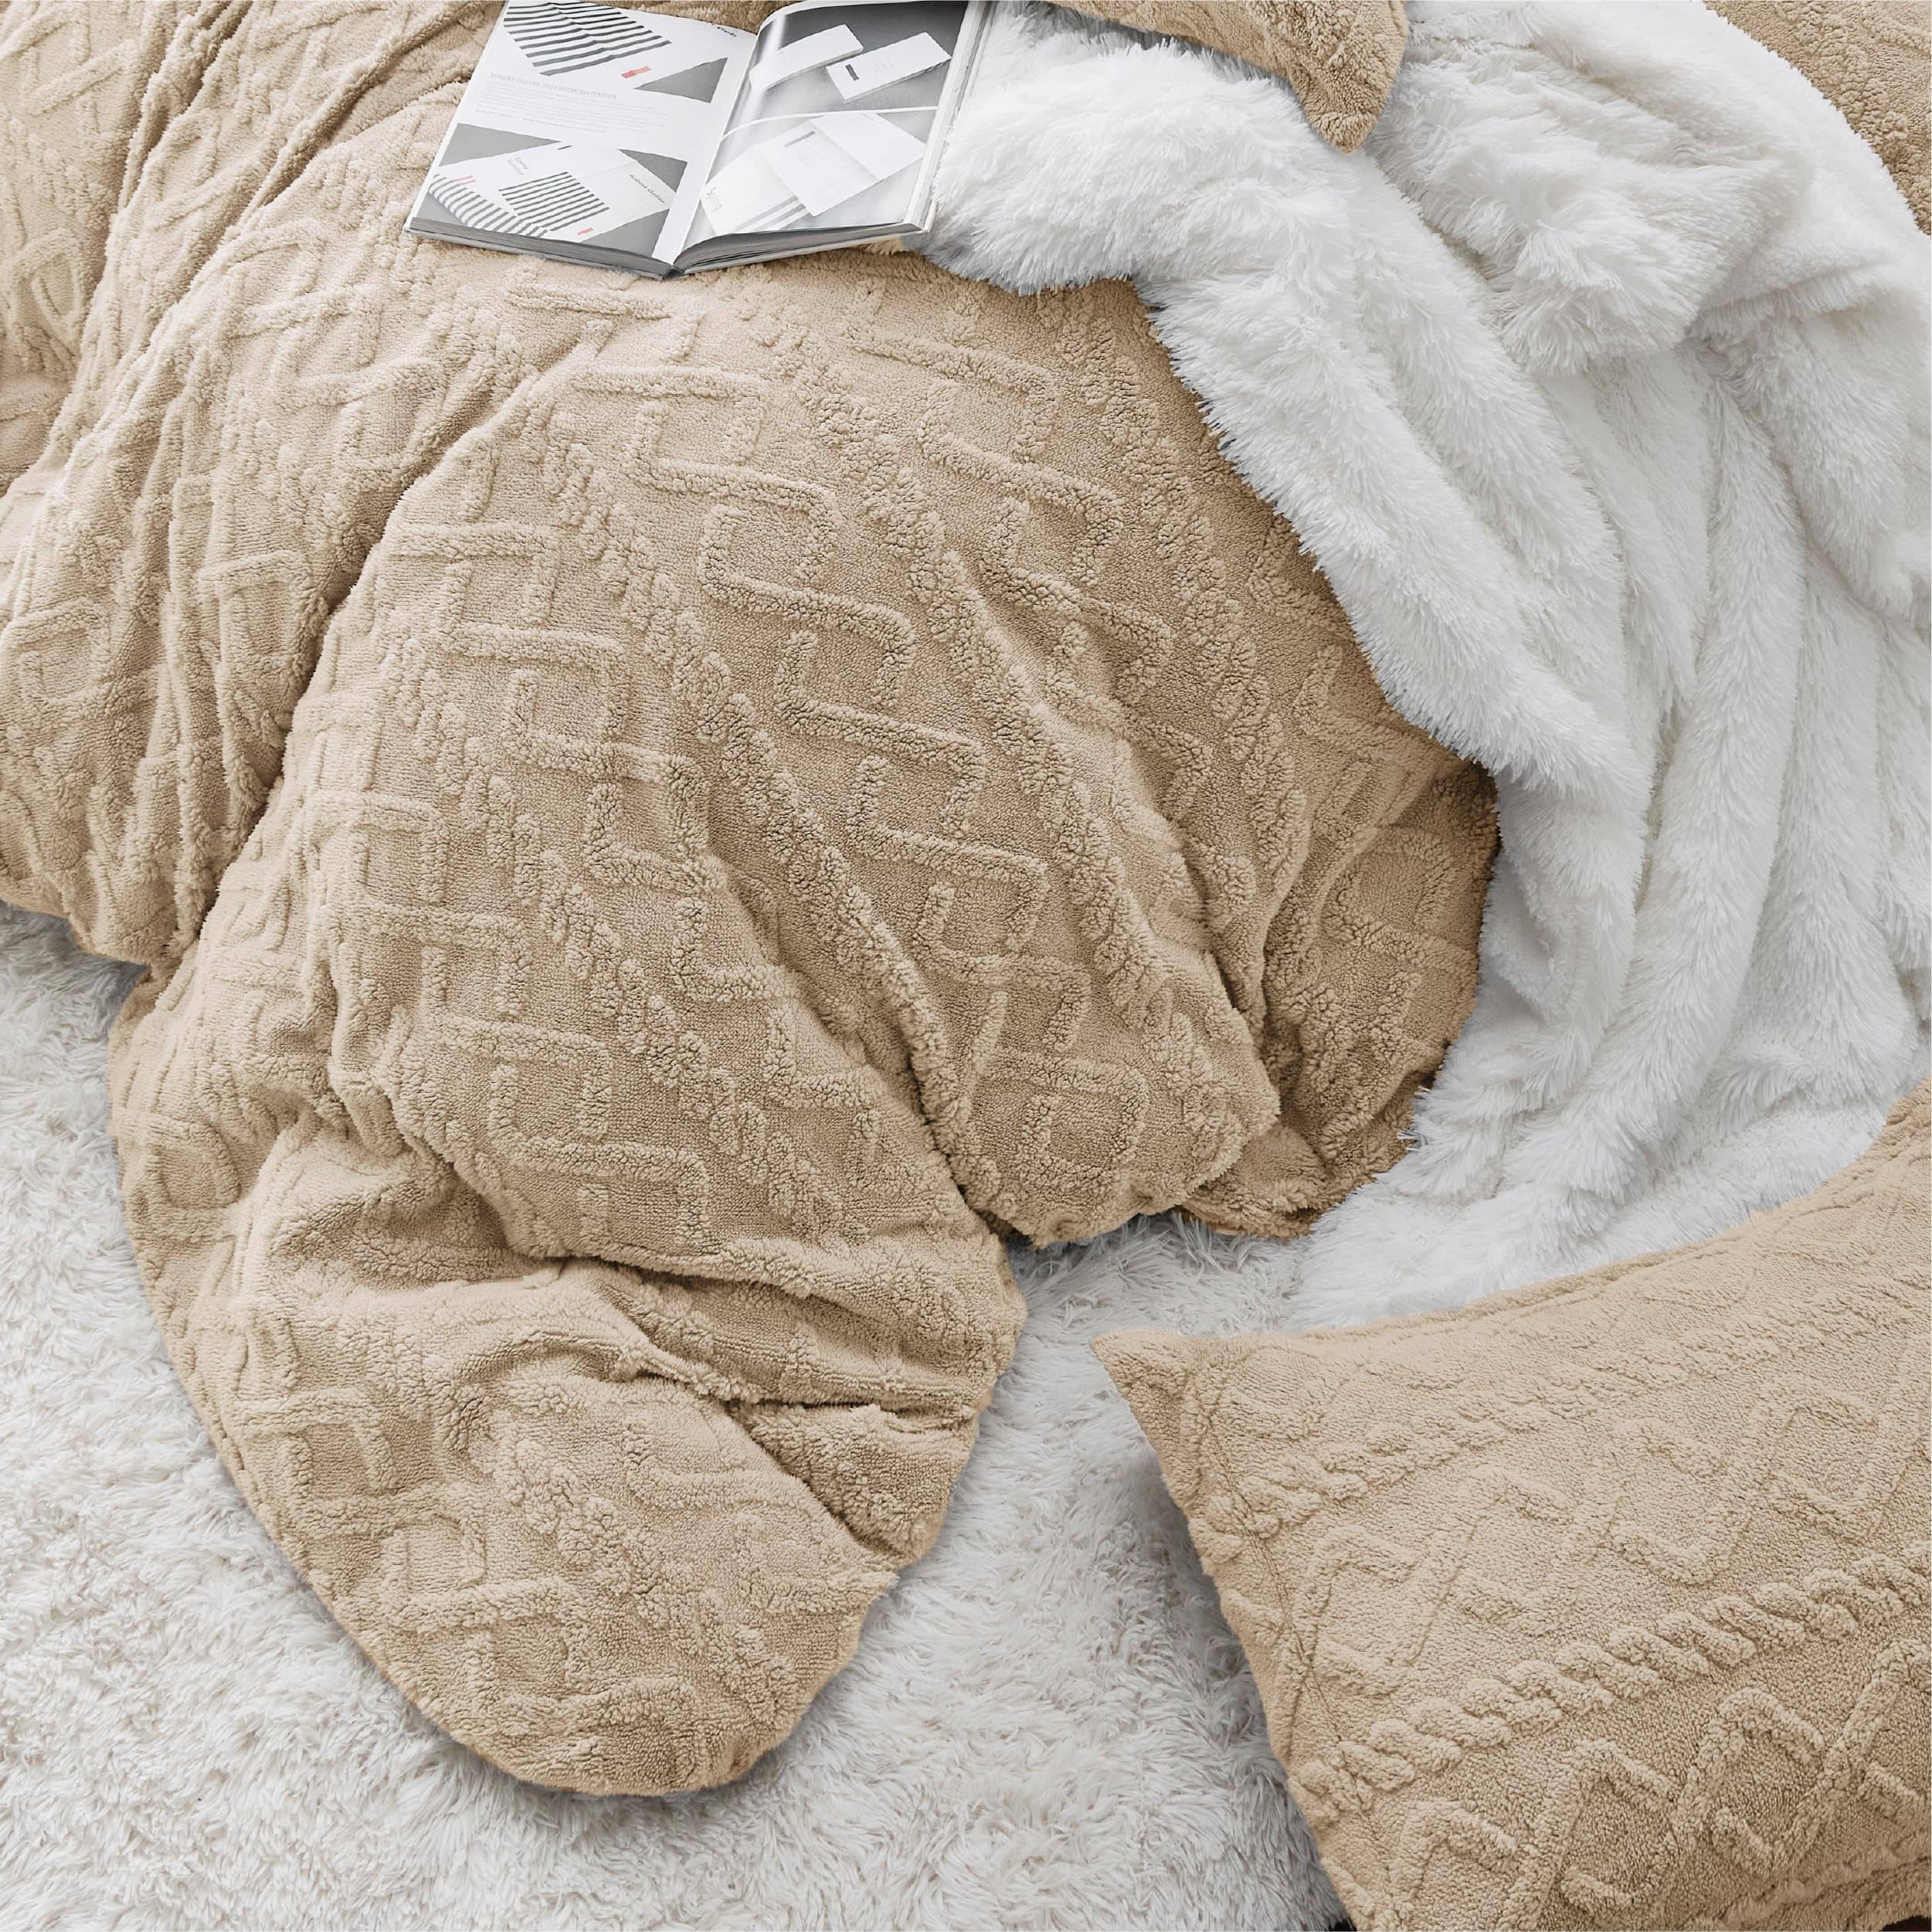 Bedsure Fluffy Boho Duvet Cover Set